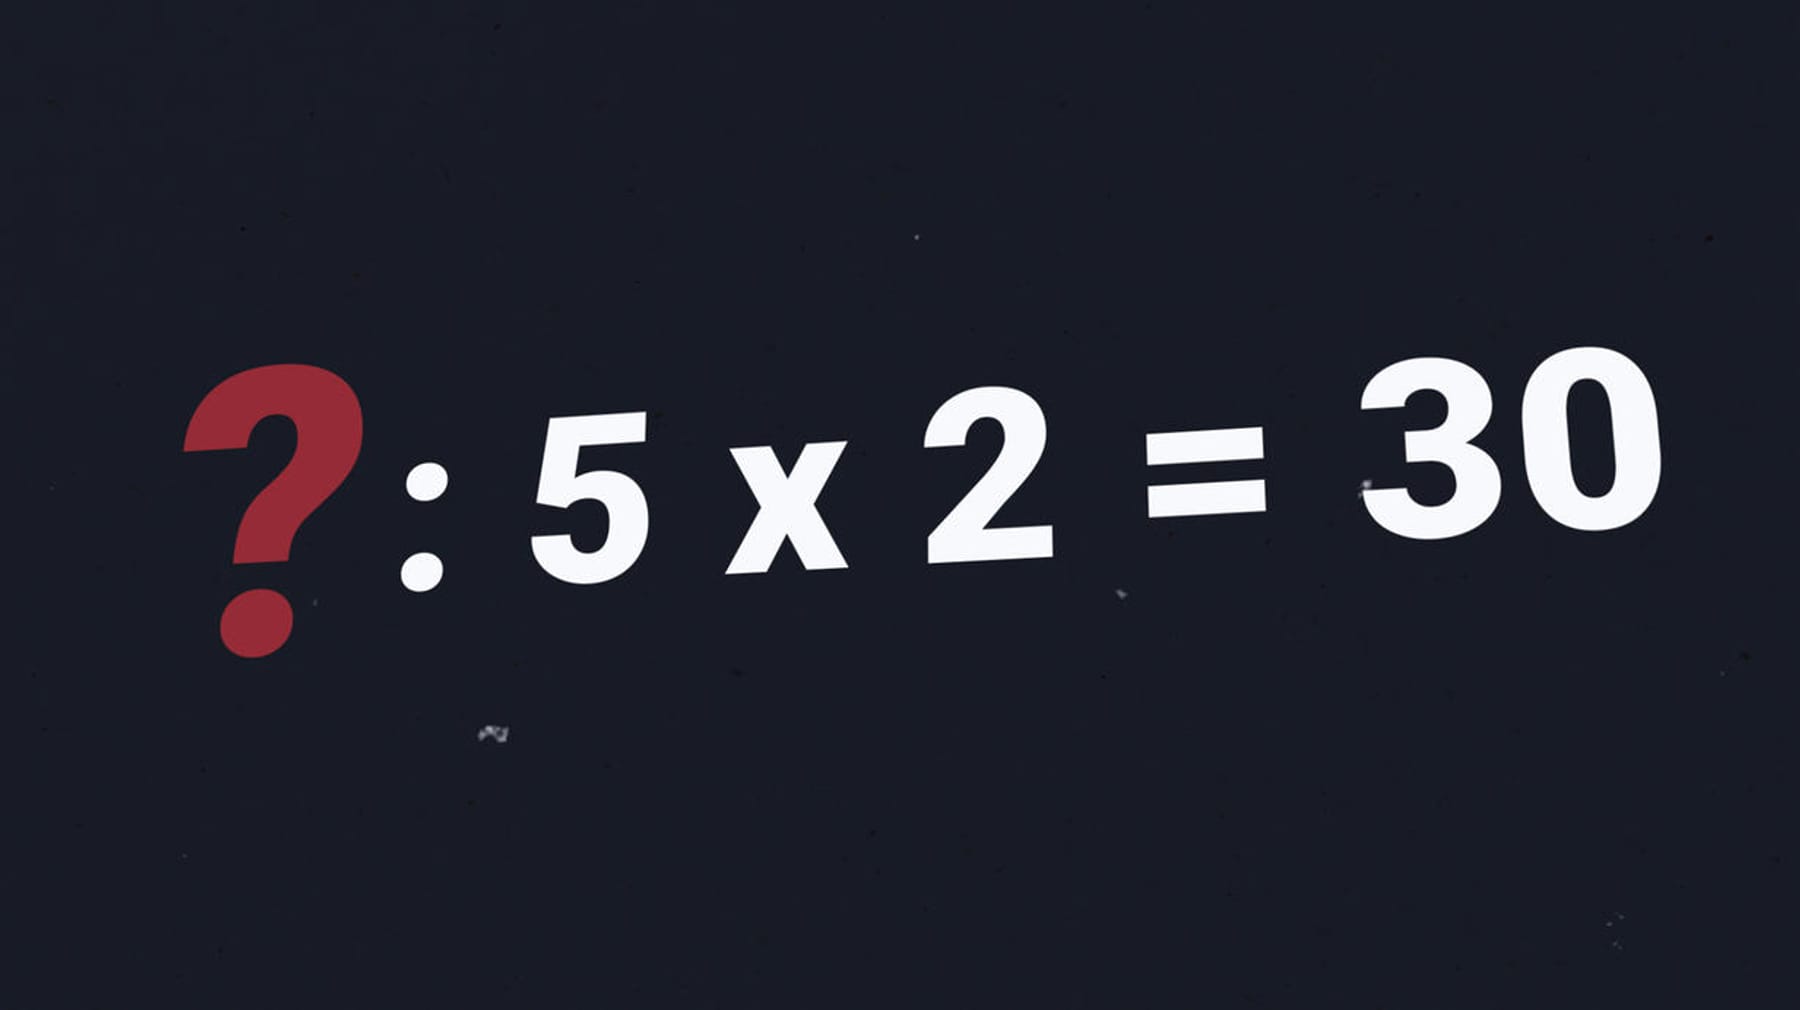 Indovinello – Quale numero è necessario in questo problema di matematica?